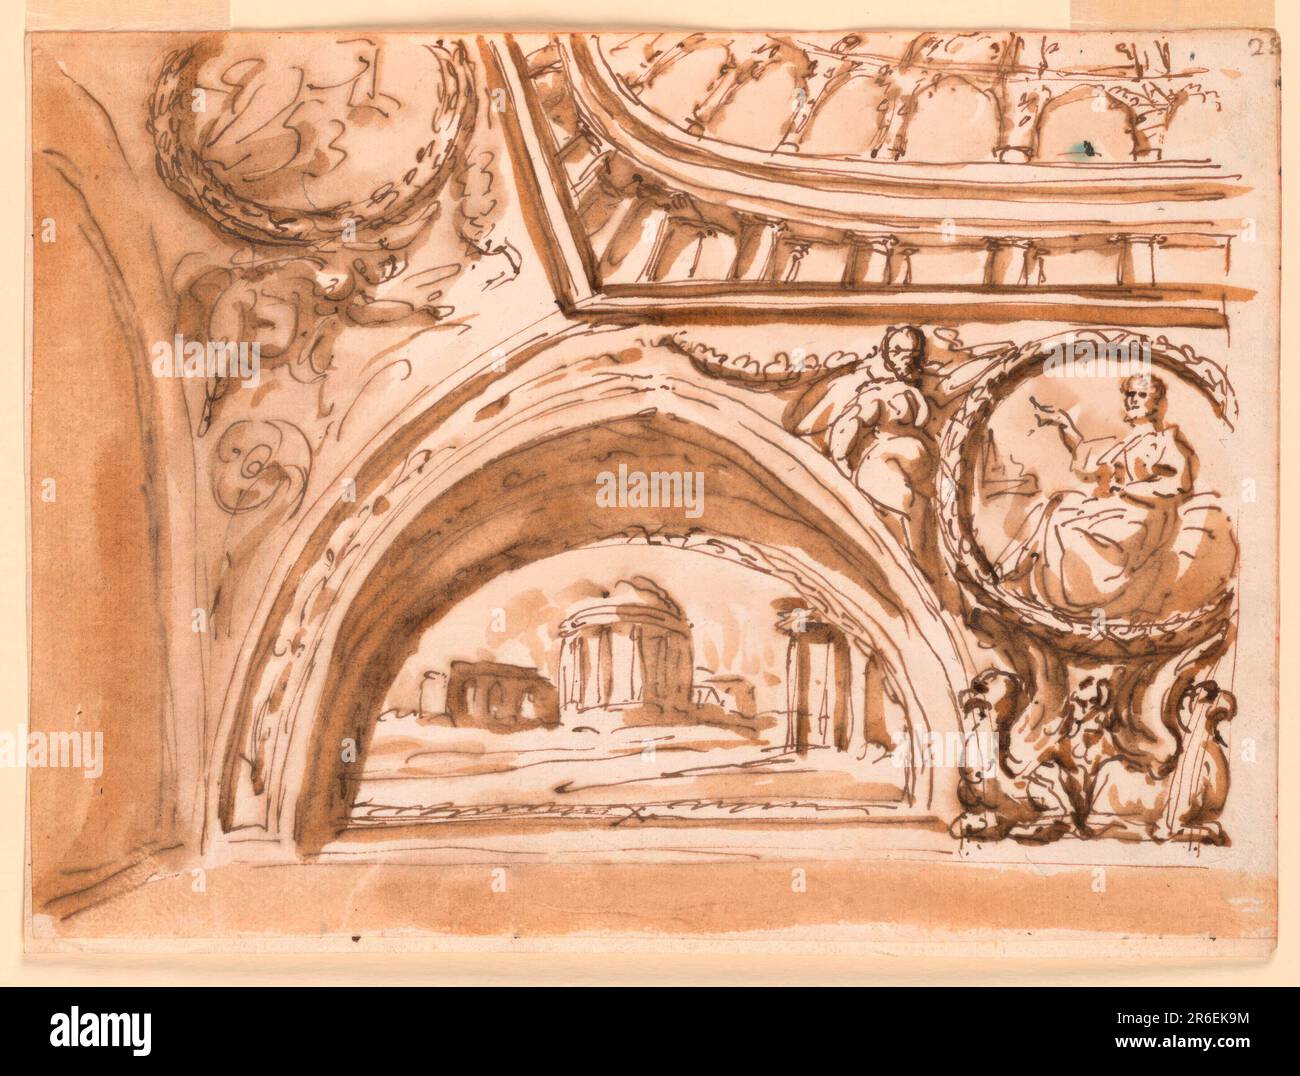 Eine Variante des Schemas von -1532. Der Bogen links ist zu einem schmalen Streifen verkleinert. Das zentrale Motiv darunter ist ein rundes Medaillon mit einem sitzenden Mann, getragen von den Flügeln zweier geduschter Greifer und unterstützt von Frauen, die auf den spitzen Bögen sitzen. Ein kugelförmiges Panel auf der linken Seite ist mit einem ovoidalen Medaillon verziert, das von sitzenden Frauen getragen wird. Oben sehen Sie eine ähnliche Ansicht wie in -1524, mit einer wahrscheinlich gleichnamigen Trellis-Architektur im Zentrum. Datum: 1790-1800. Stift und braune Tinte, Pinsel und braunes Waschpapier, verlegt, gefüttert. Museum: Cooper Hewitt, Smithsonian Design Museum. Stockfoto